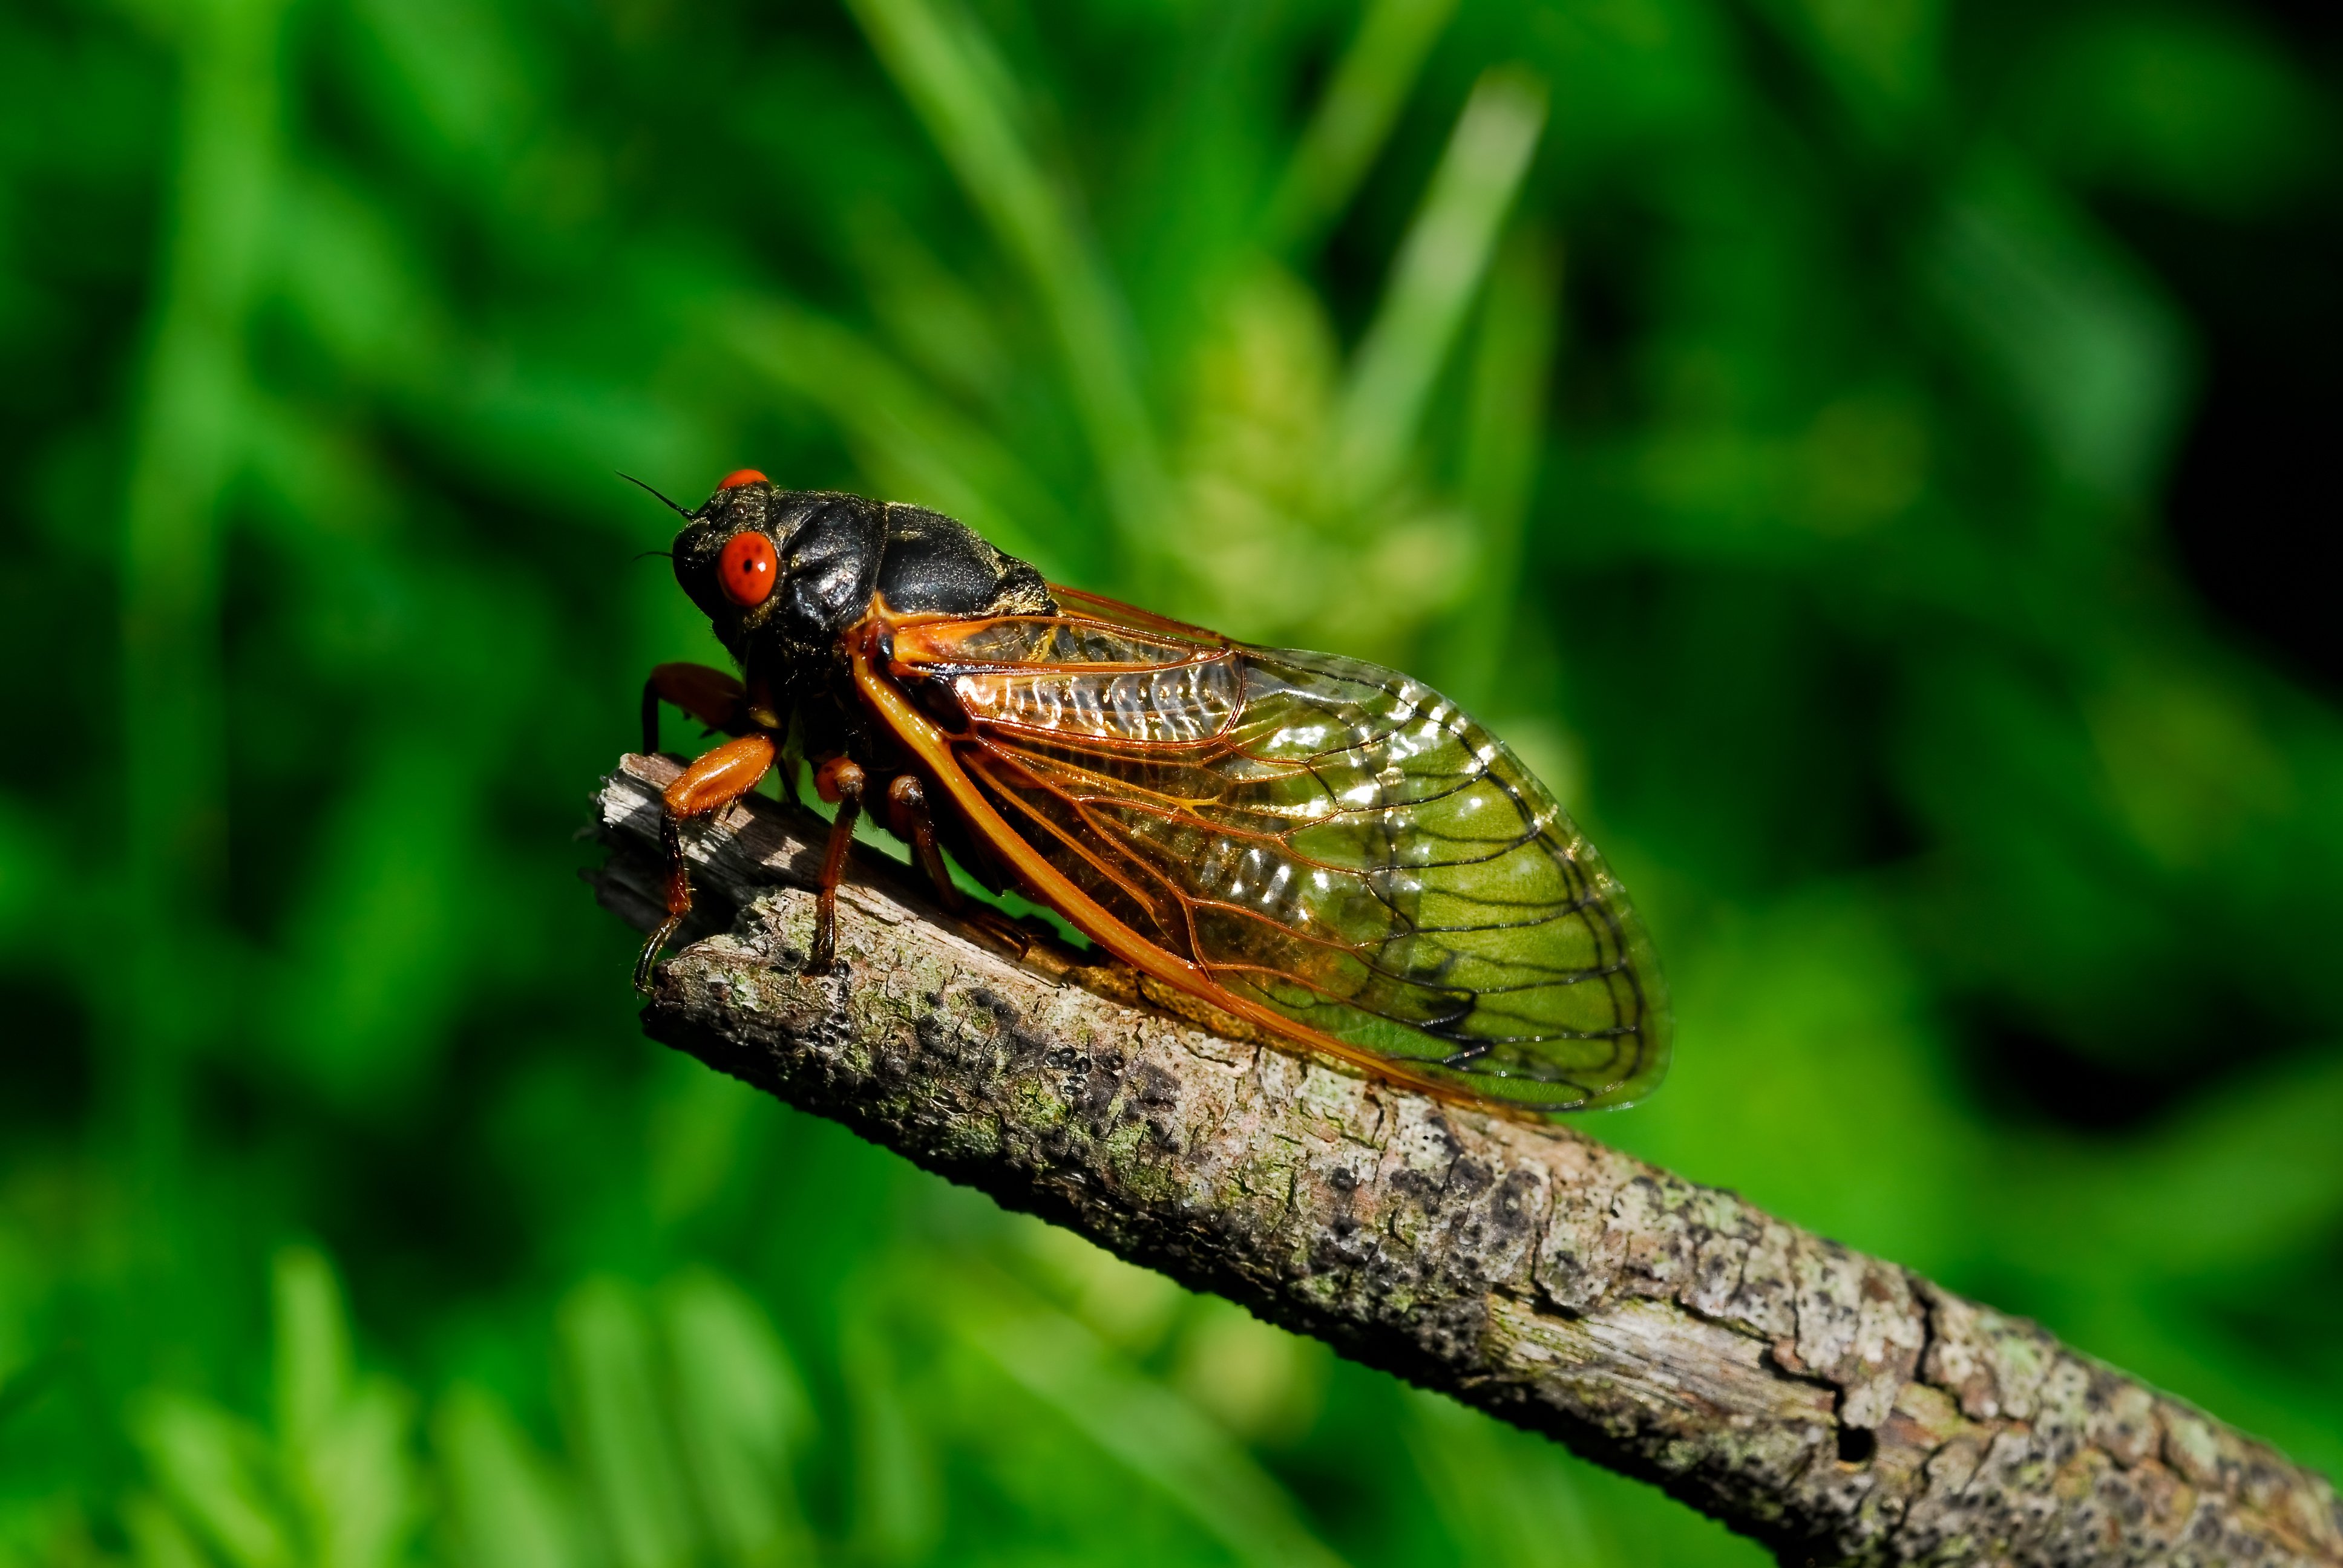 Close up image of a cicada.